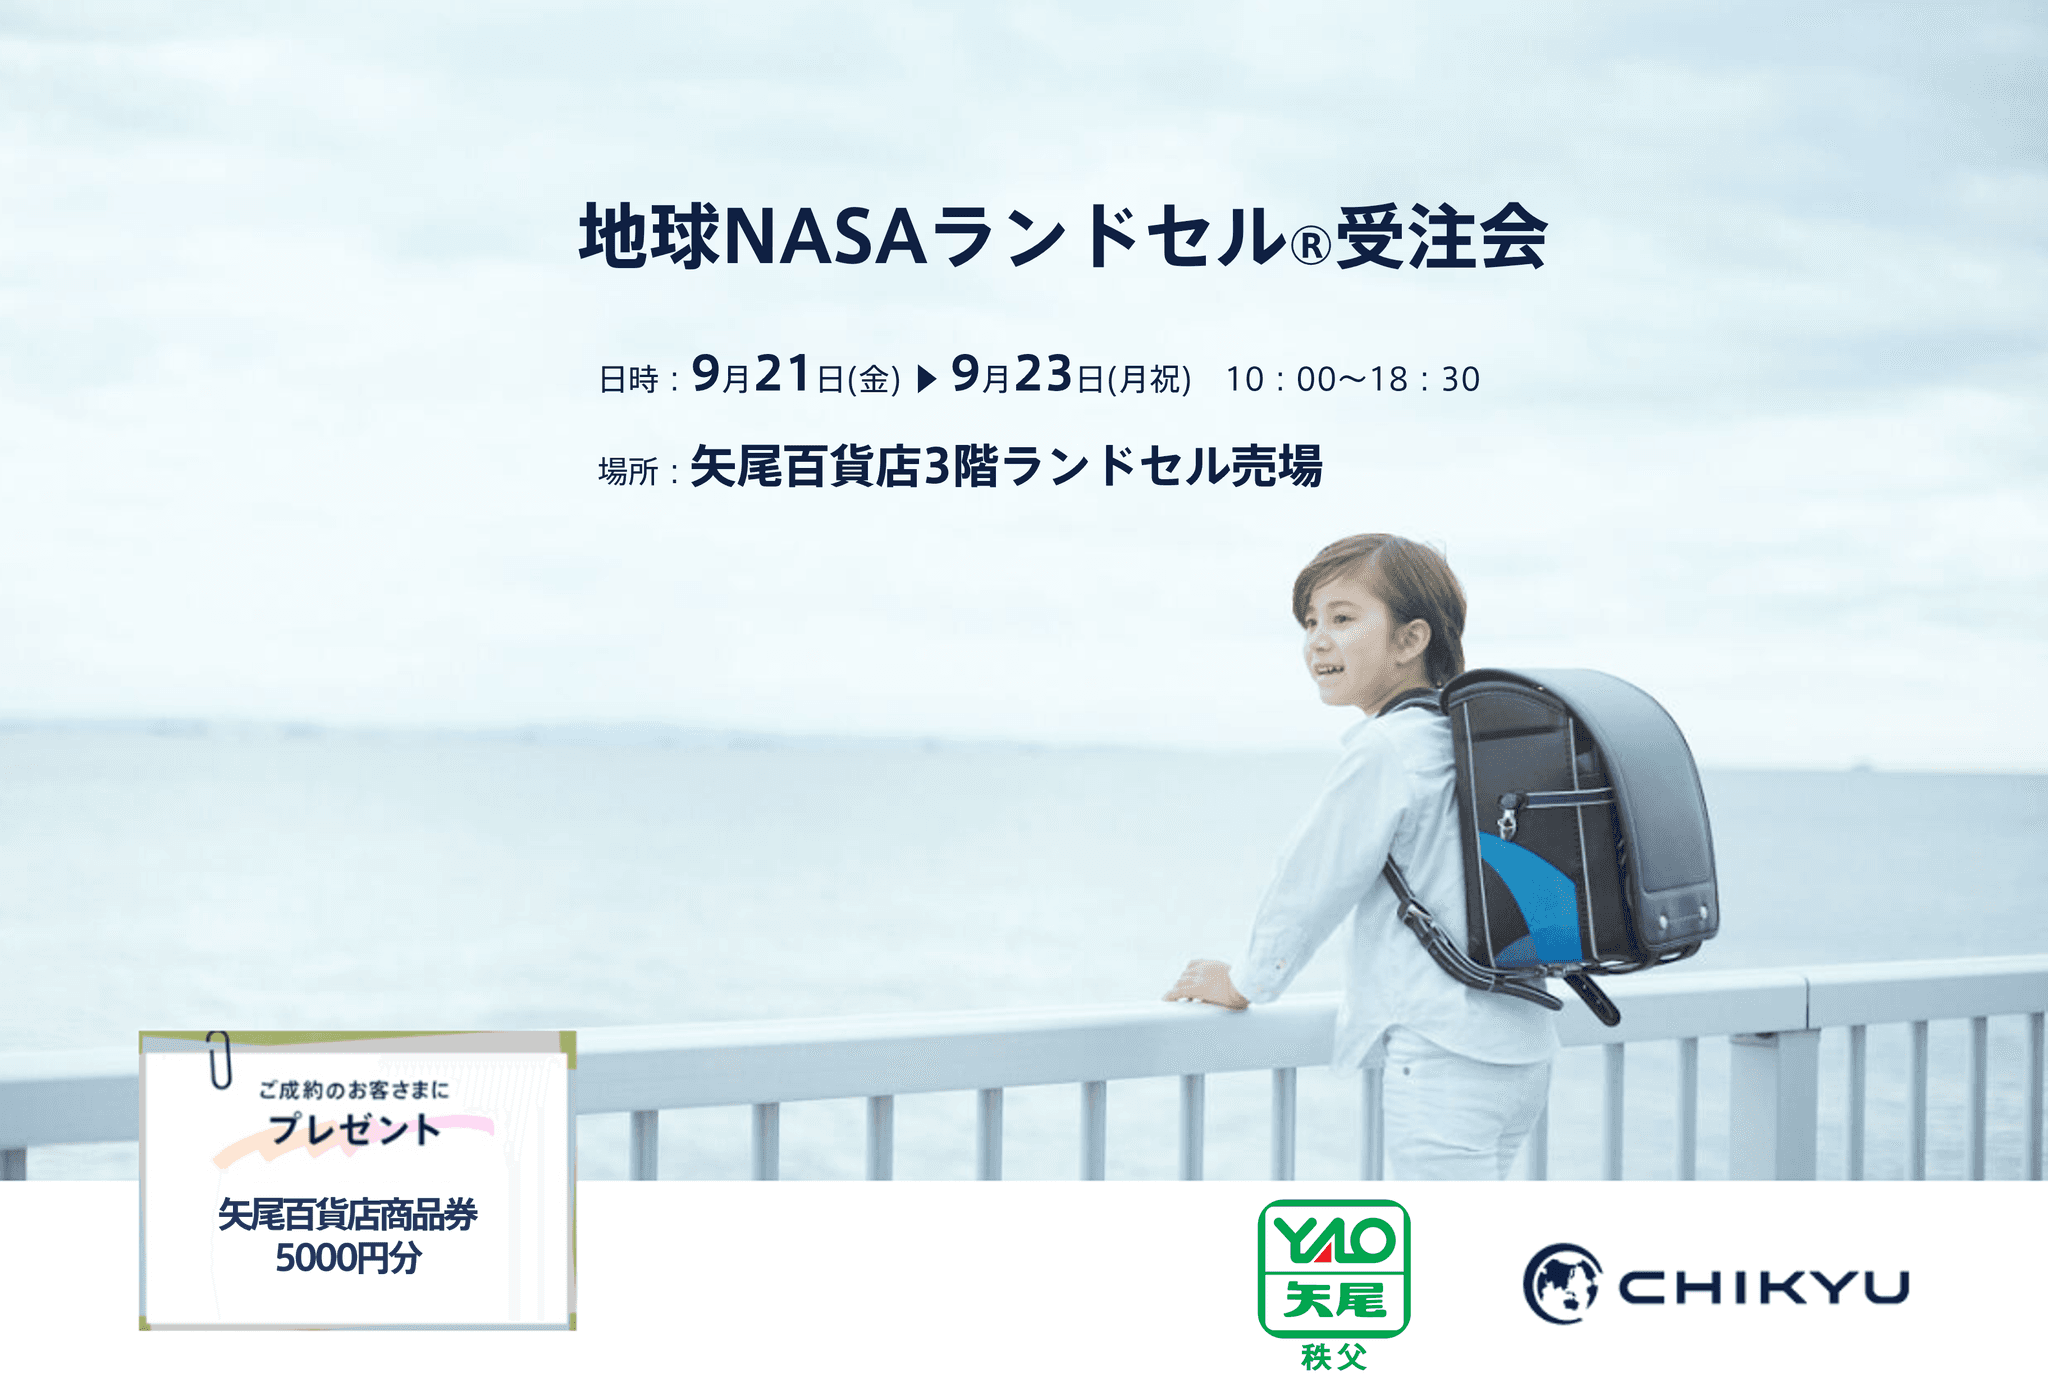 【埼玉】矢尾百貨店にて「地球NASAランドセル(R) 受注会」を開催いたします。